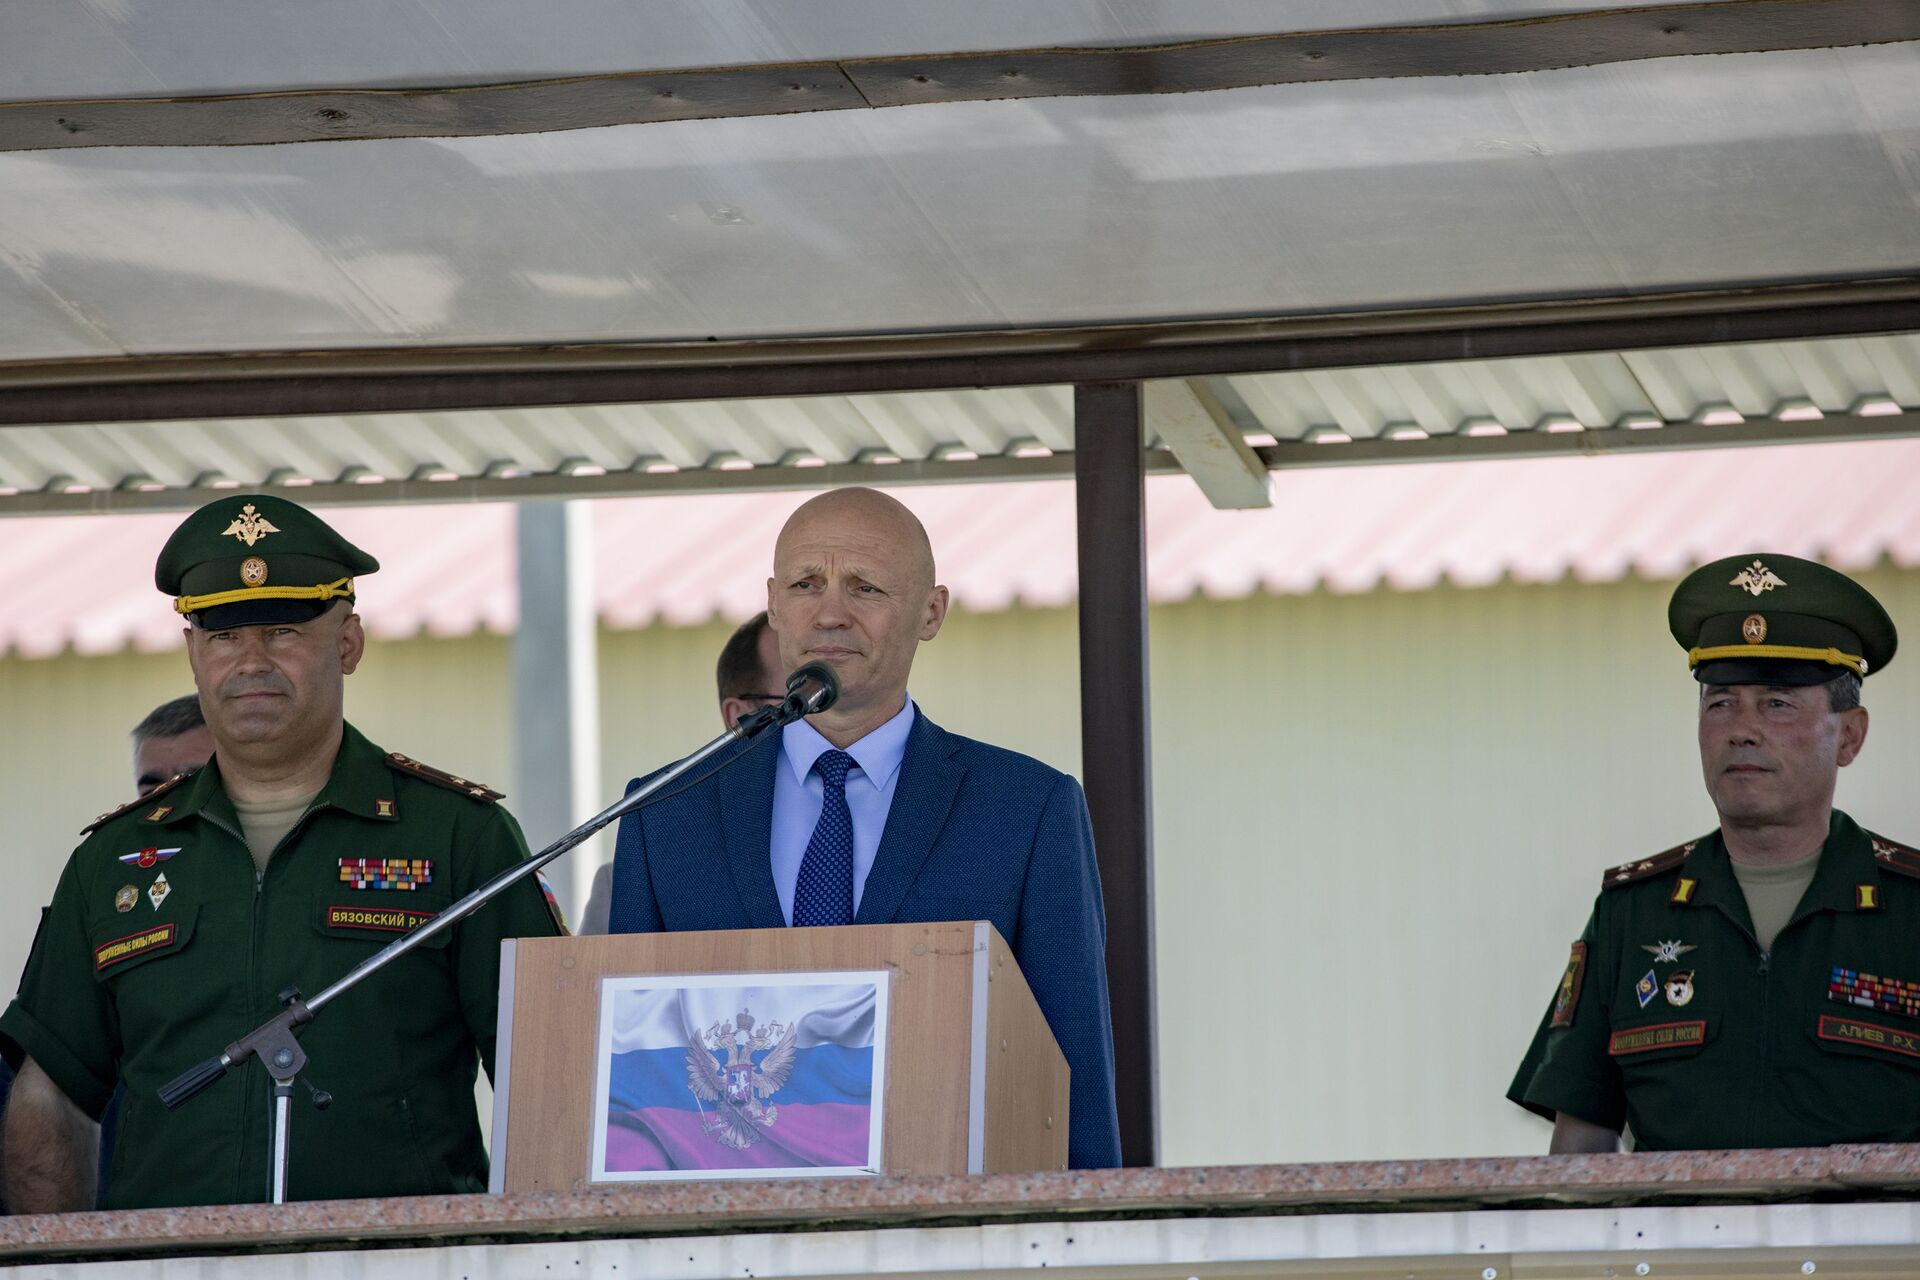 Выставка в рамках форума Армия-2021 открылась на российской военной базе в Южной Осетии - Sputnik Южная Осетия, 1920, 27.08.2021